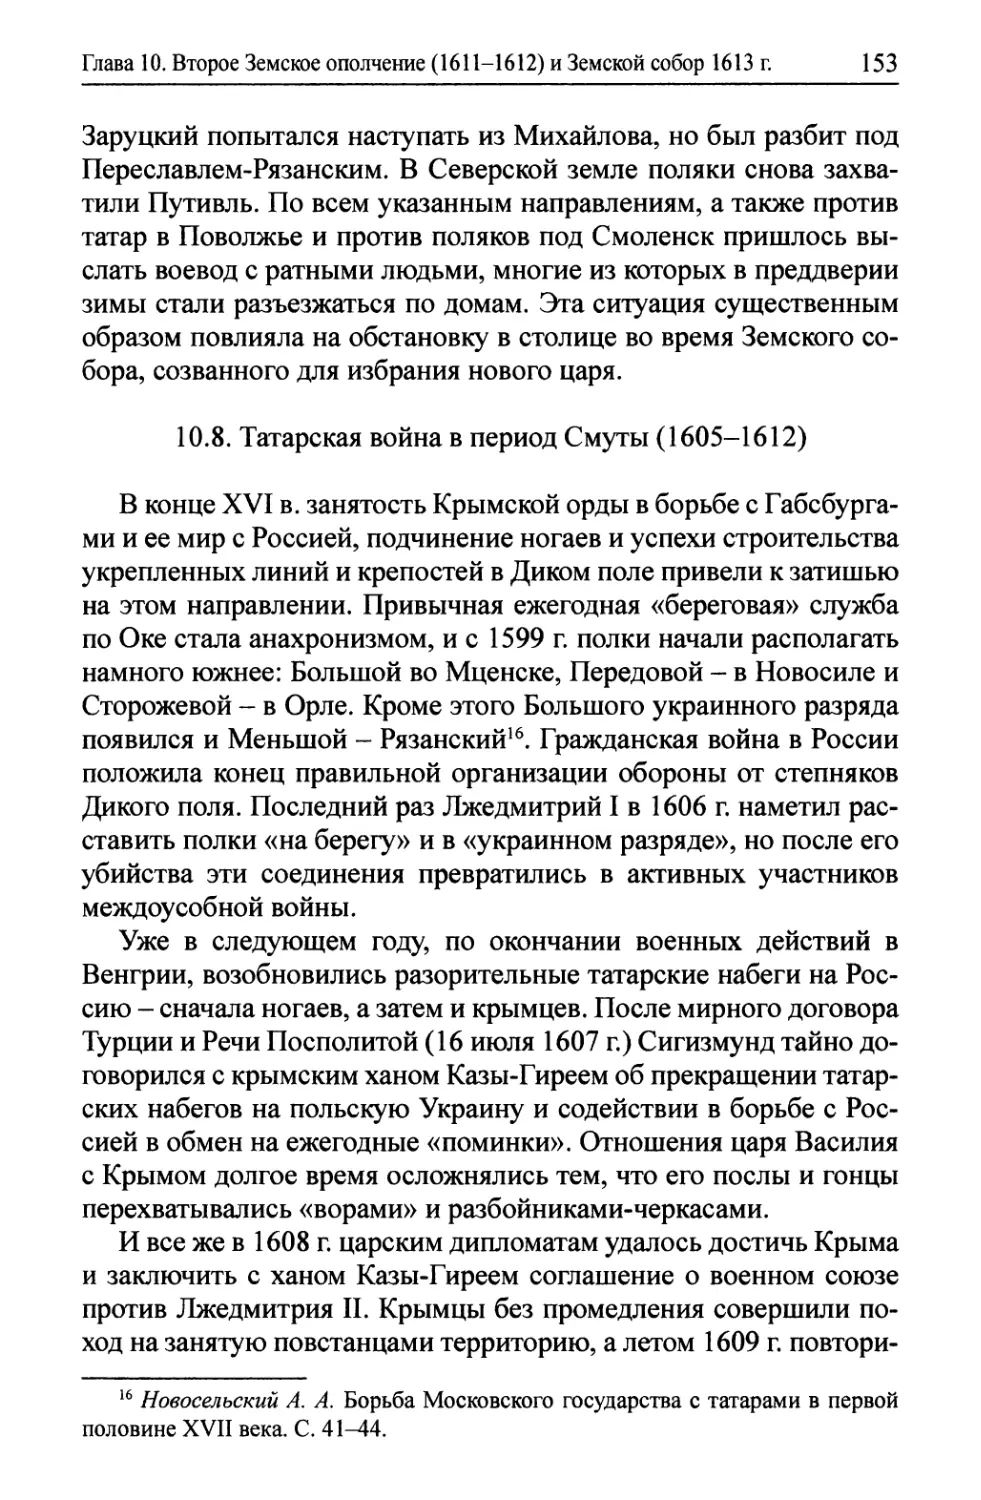 10.8. Татарская война в период Смуты (1605-1612)